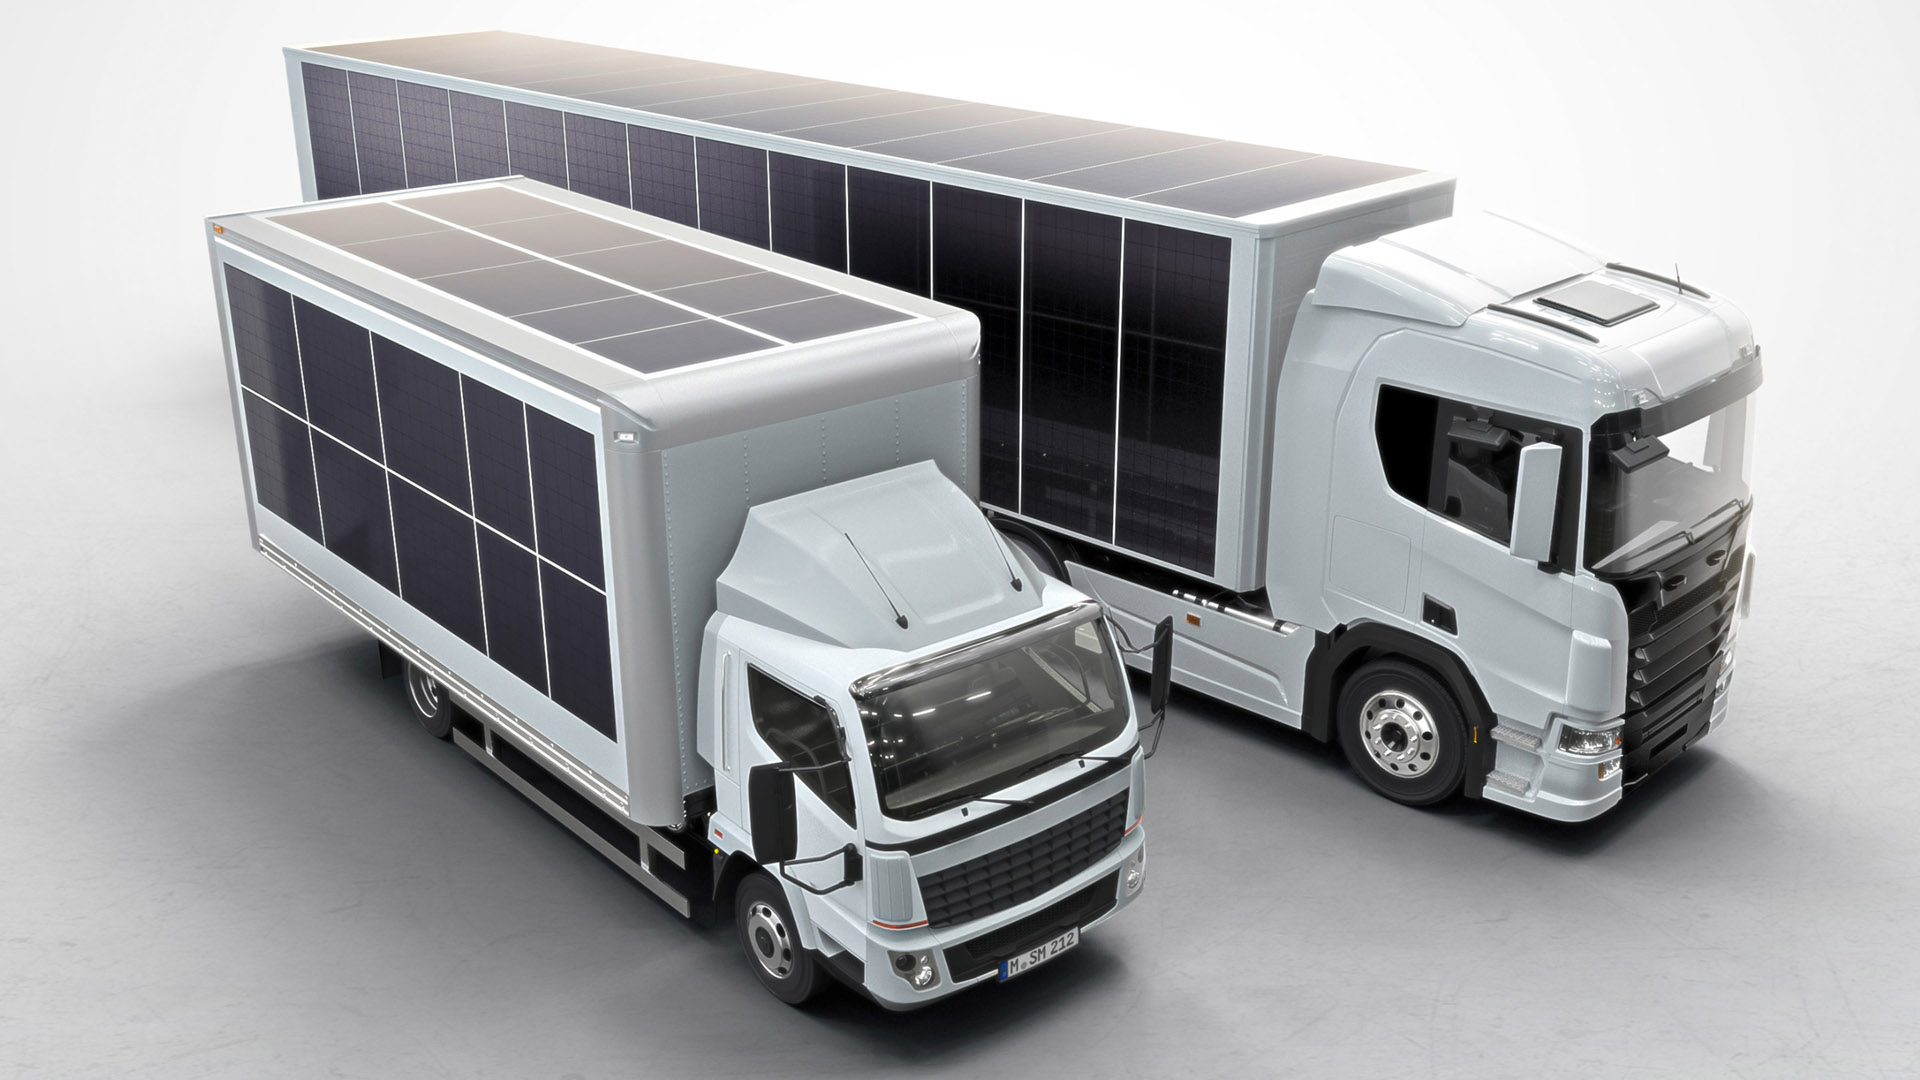 Los camiones no serán solares, pero sus cargas refrigeradas no cosumirán energía que provenga del motor de combustión, al menos en esta primera etapa